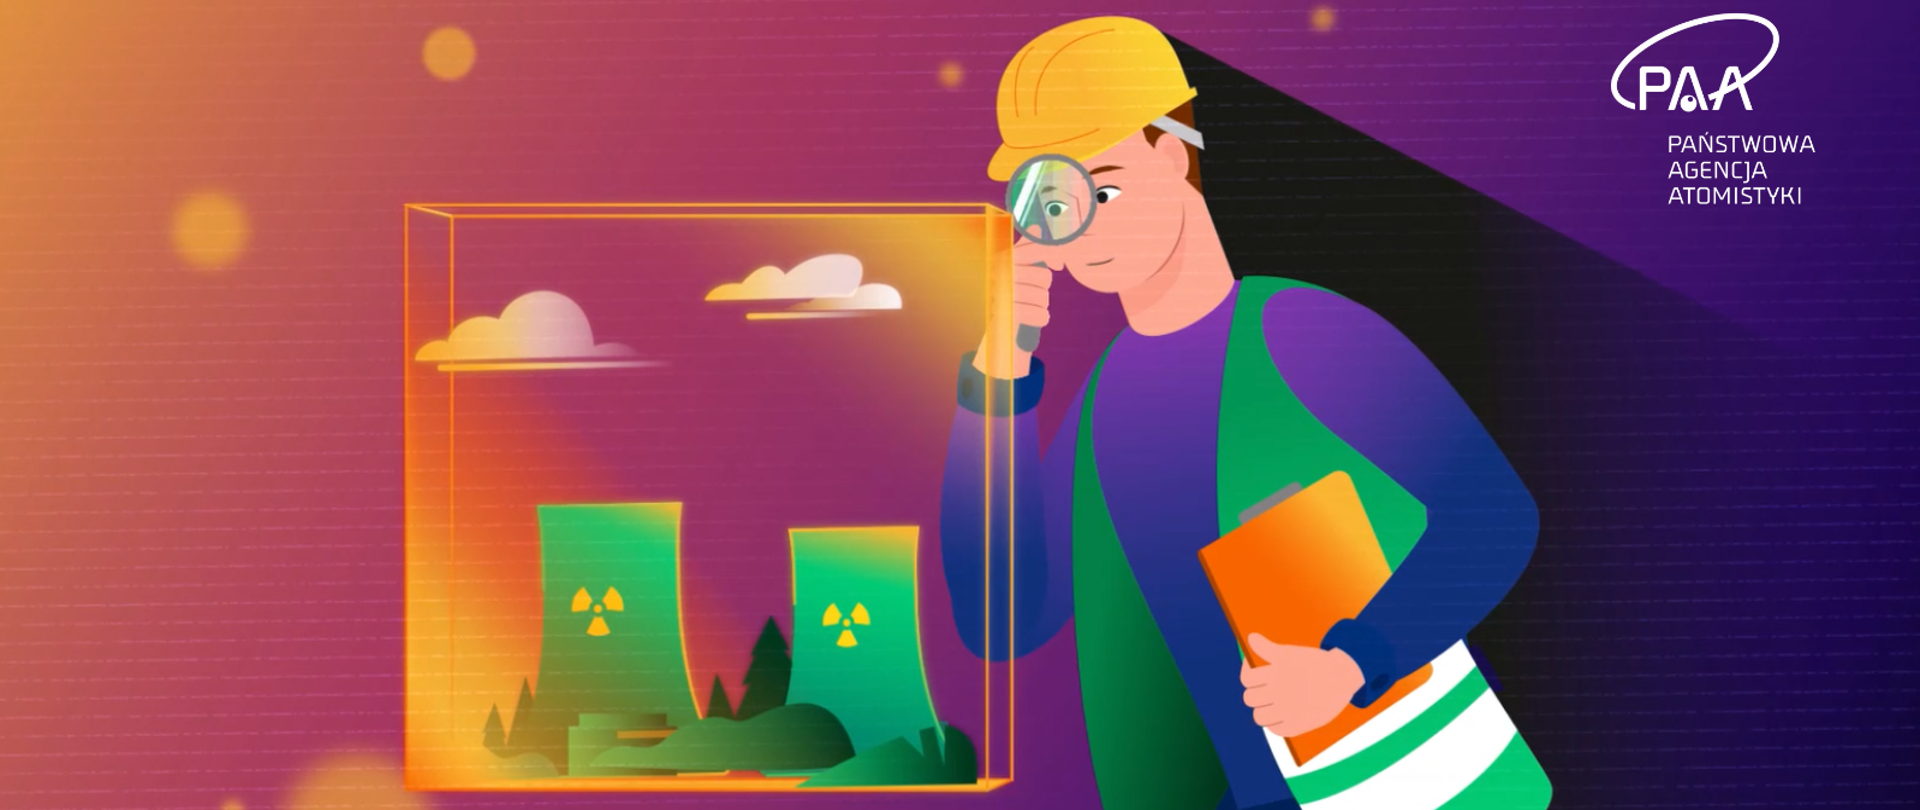 Grafika - inspektor dozoru jądrowego z kaskiem ochronnym na głowie oraz kamizelką ogląda przez lupę symboliczną wizualizację elektrowni jądrowej, zamkniętej w sześcianie. W drugiej ręce inspektora znajduje się notatnik